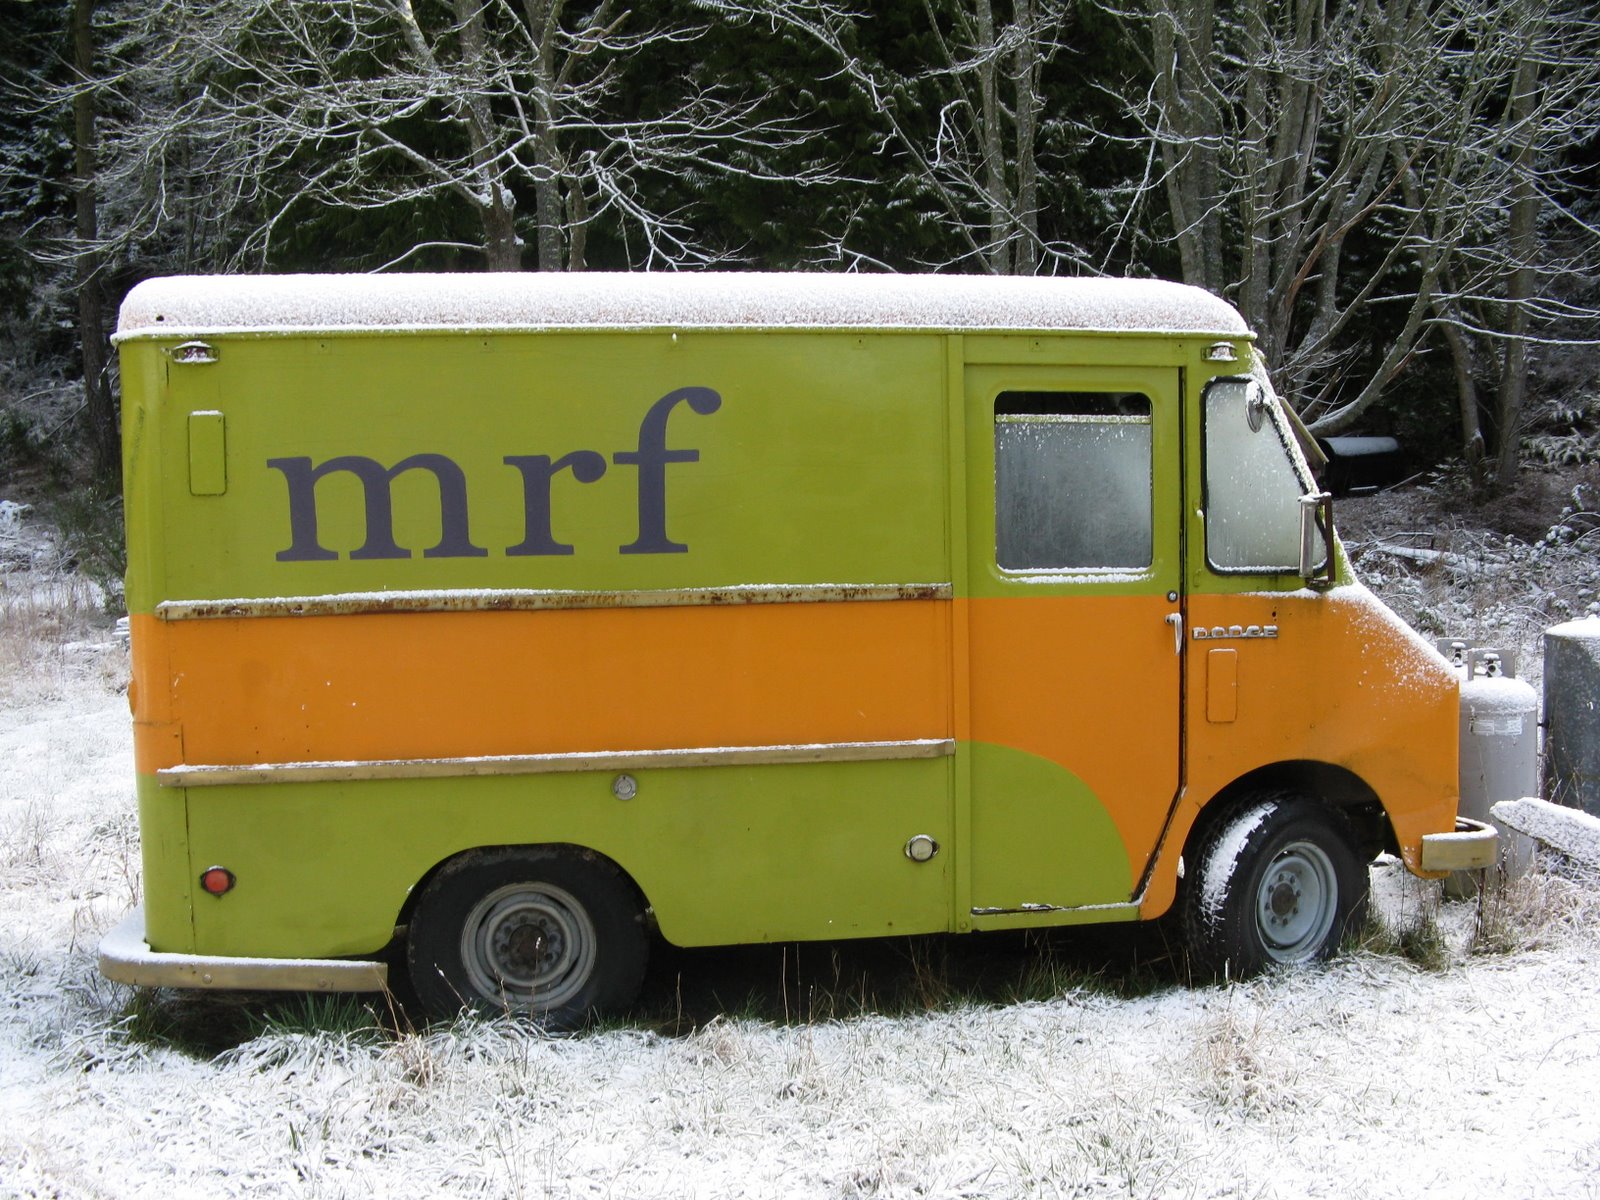 The original mrf mobile